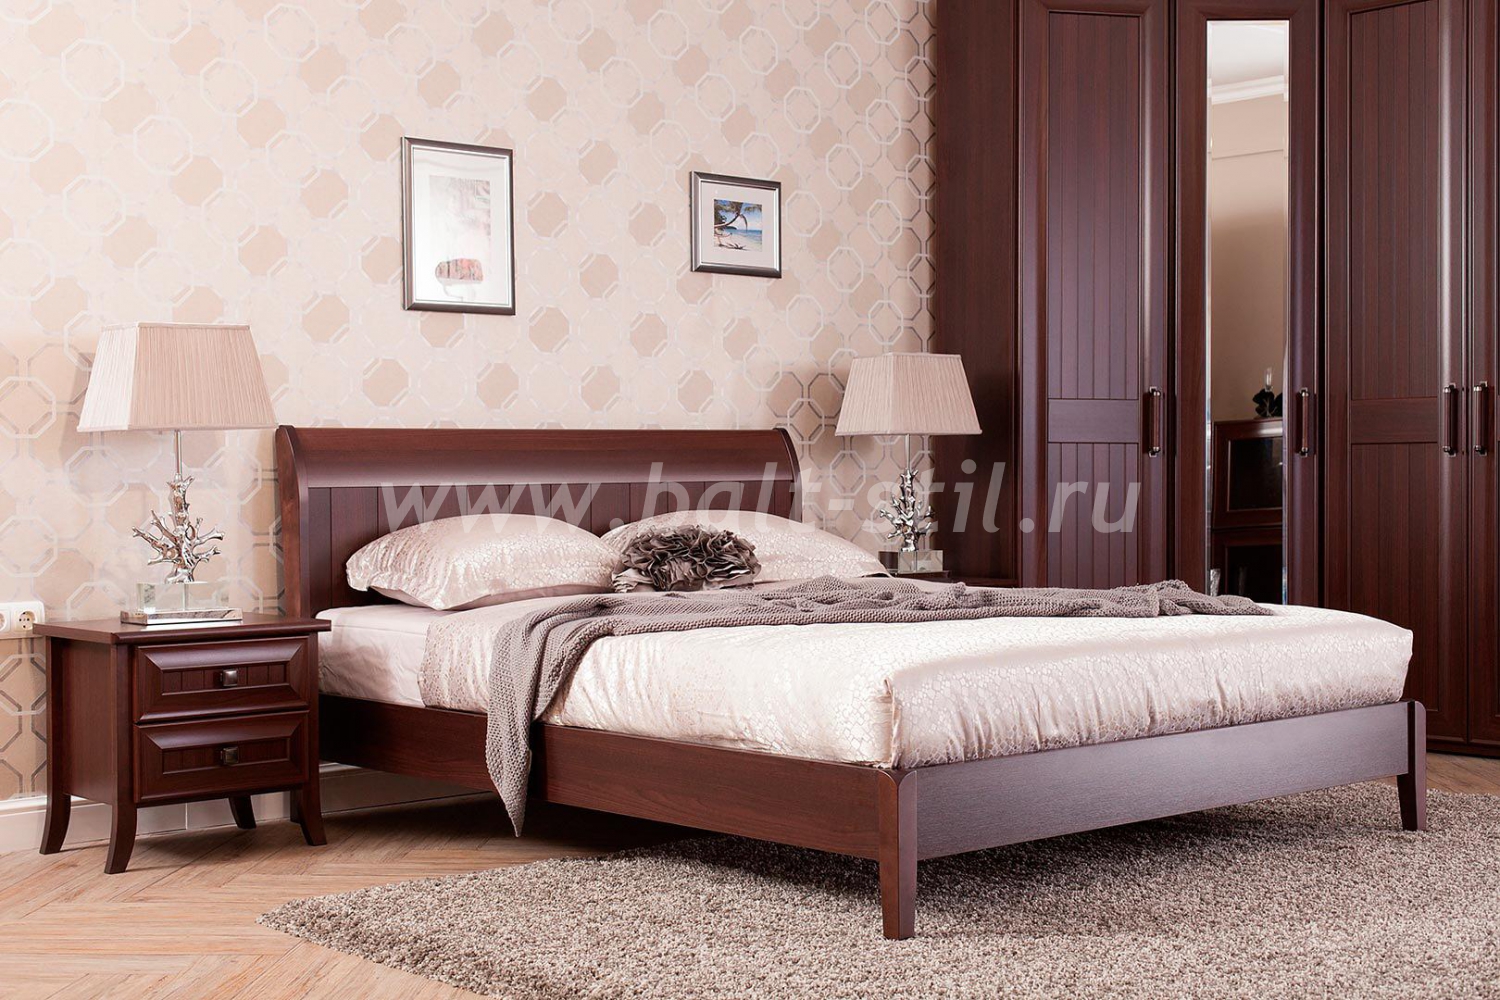 Кровати перрино - роскошная спальня по доступной цене. как выбрать кровать perrino